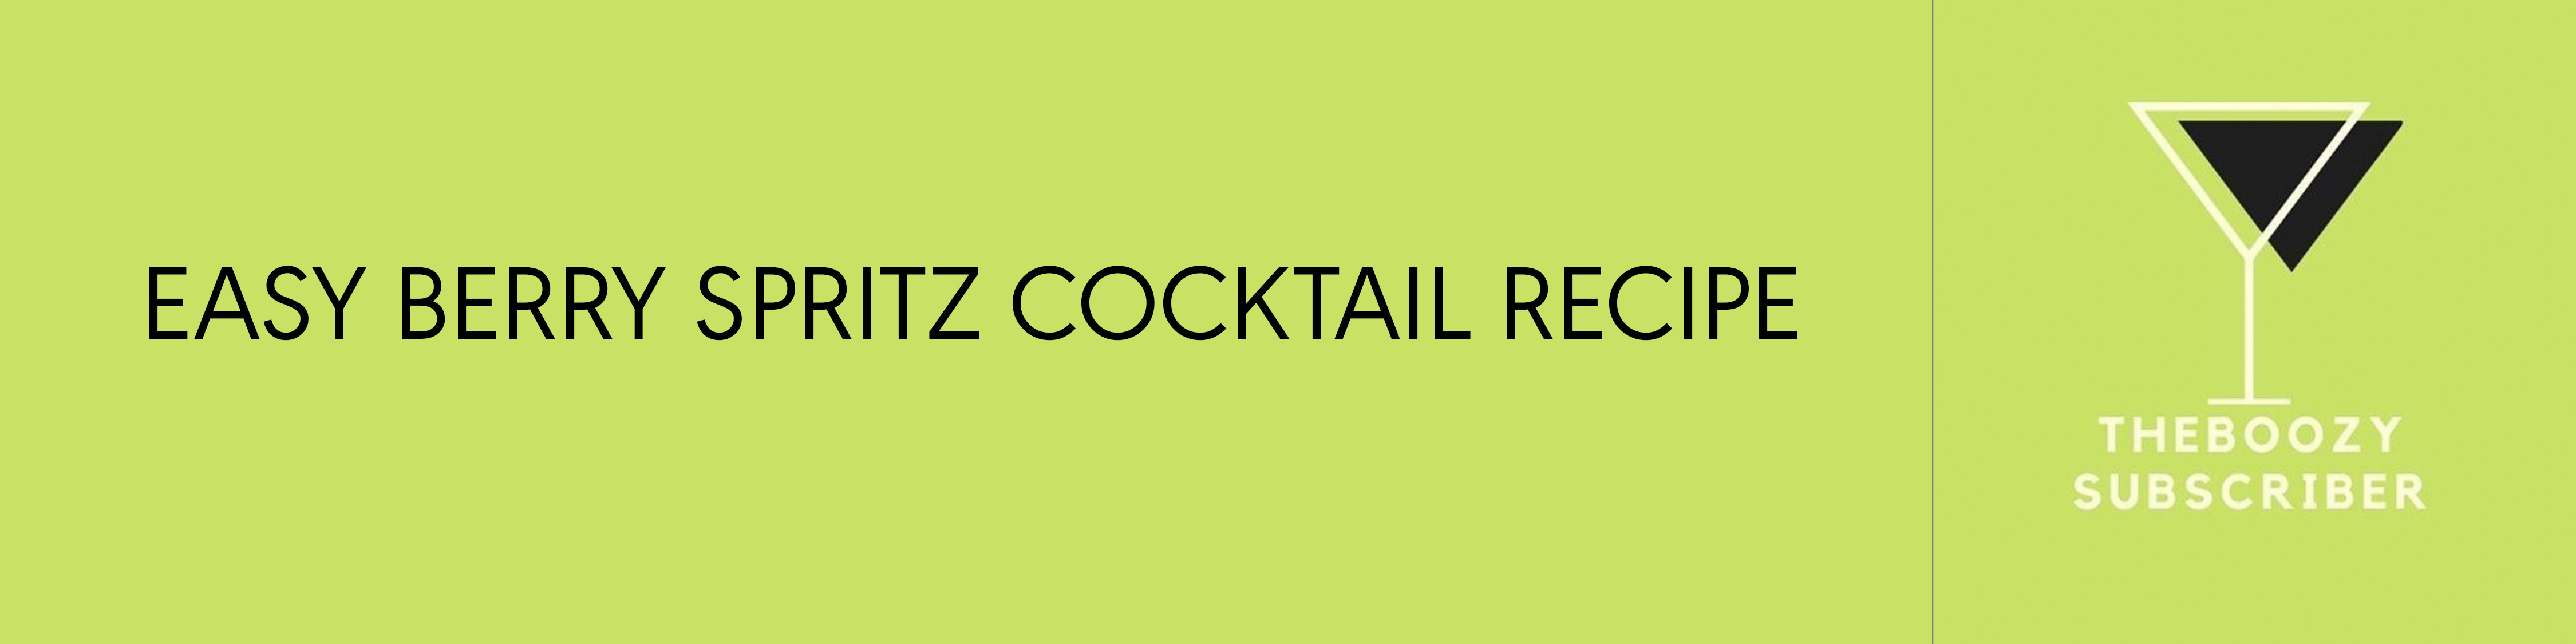 Easy Berry Spritz Cocktail Recipe